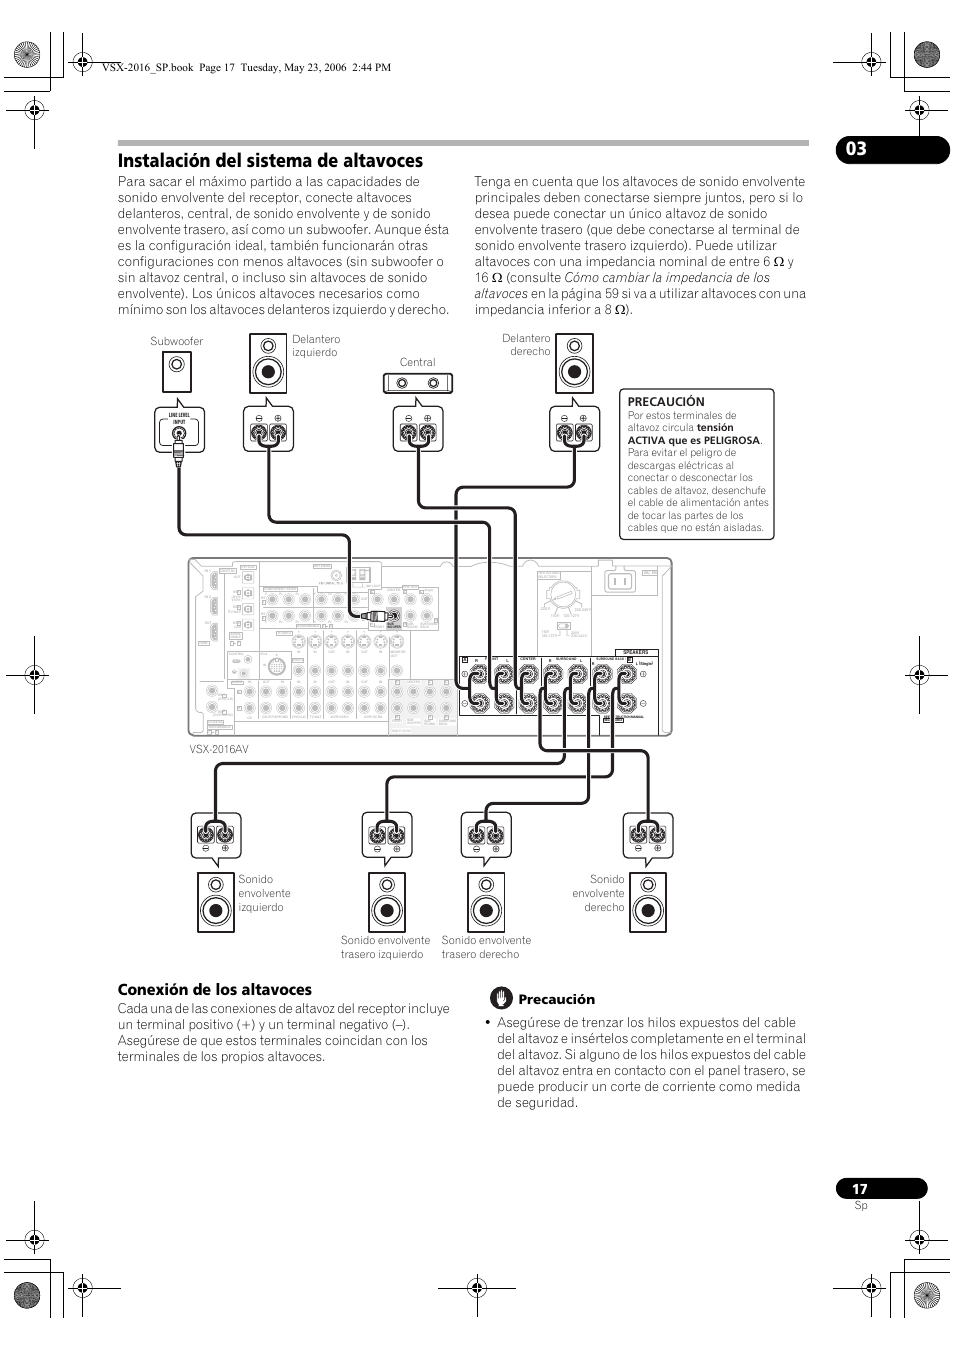 Instalación del sistema de altavoces, Conexión de los altavoces, Precaución | Subwoofer | Pioneer VSX-2016AV-S Manual del usuario | Página 17 / 80